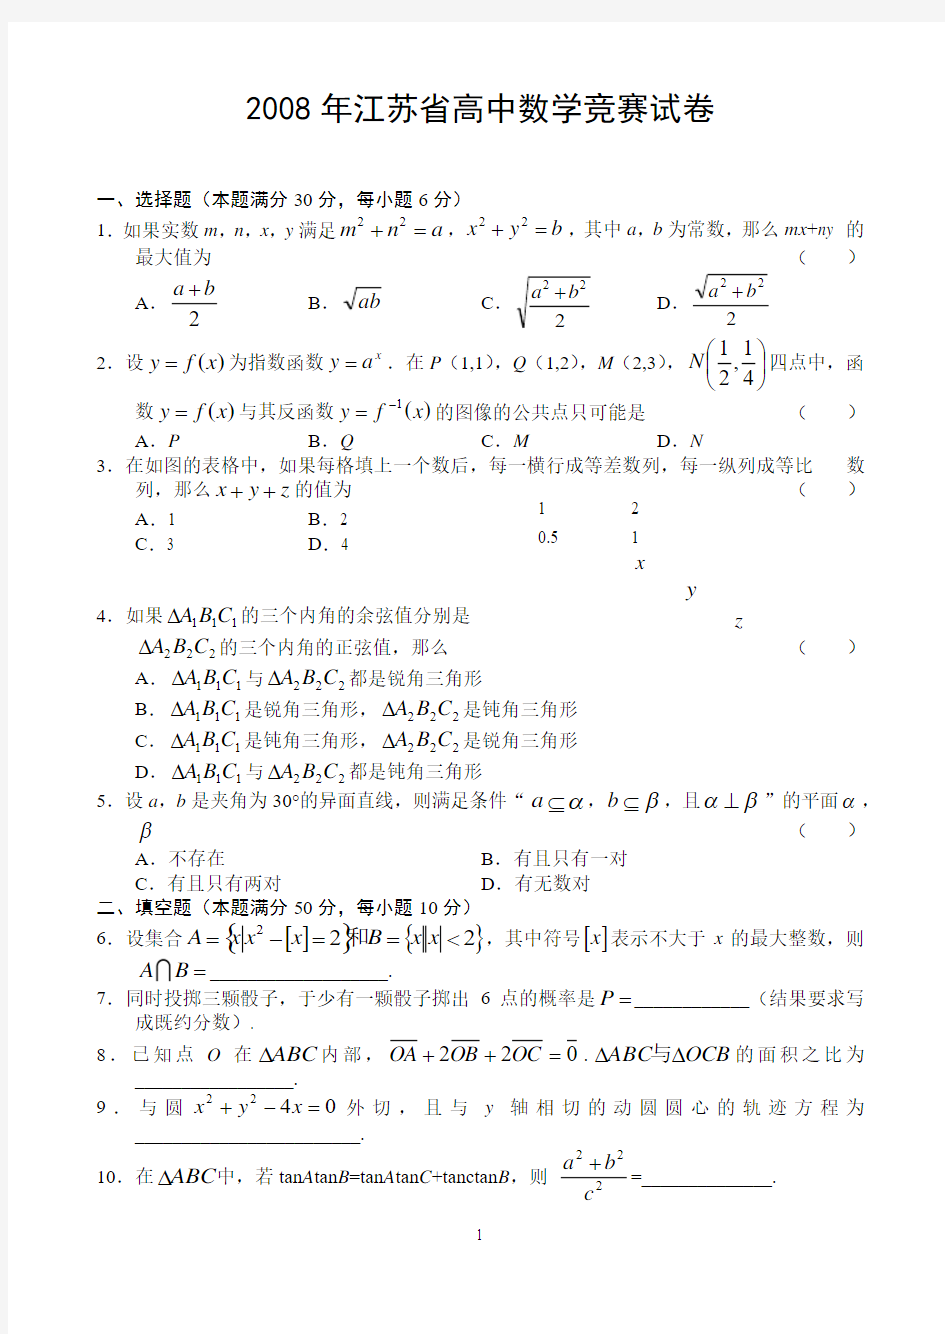 江苏省高中数学竞赛试卷